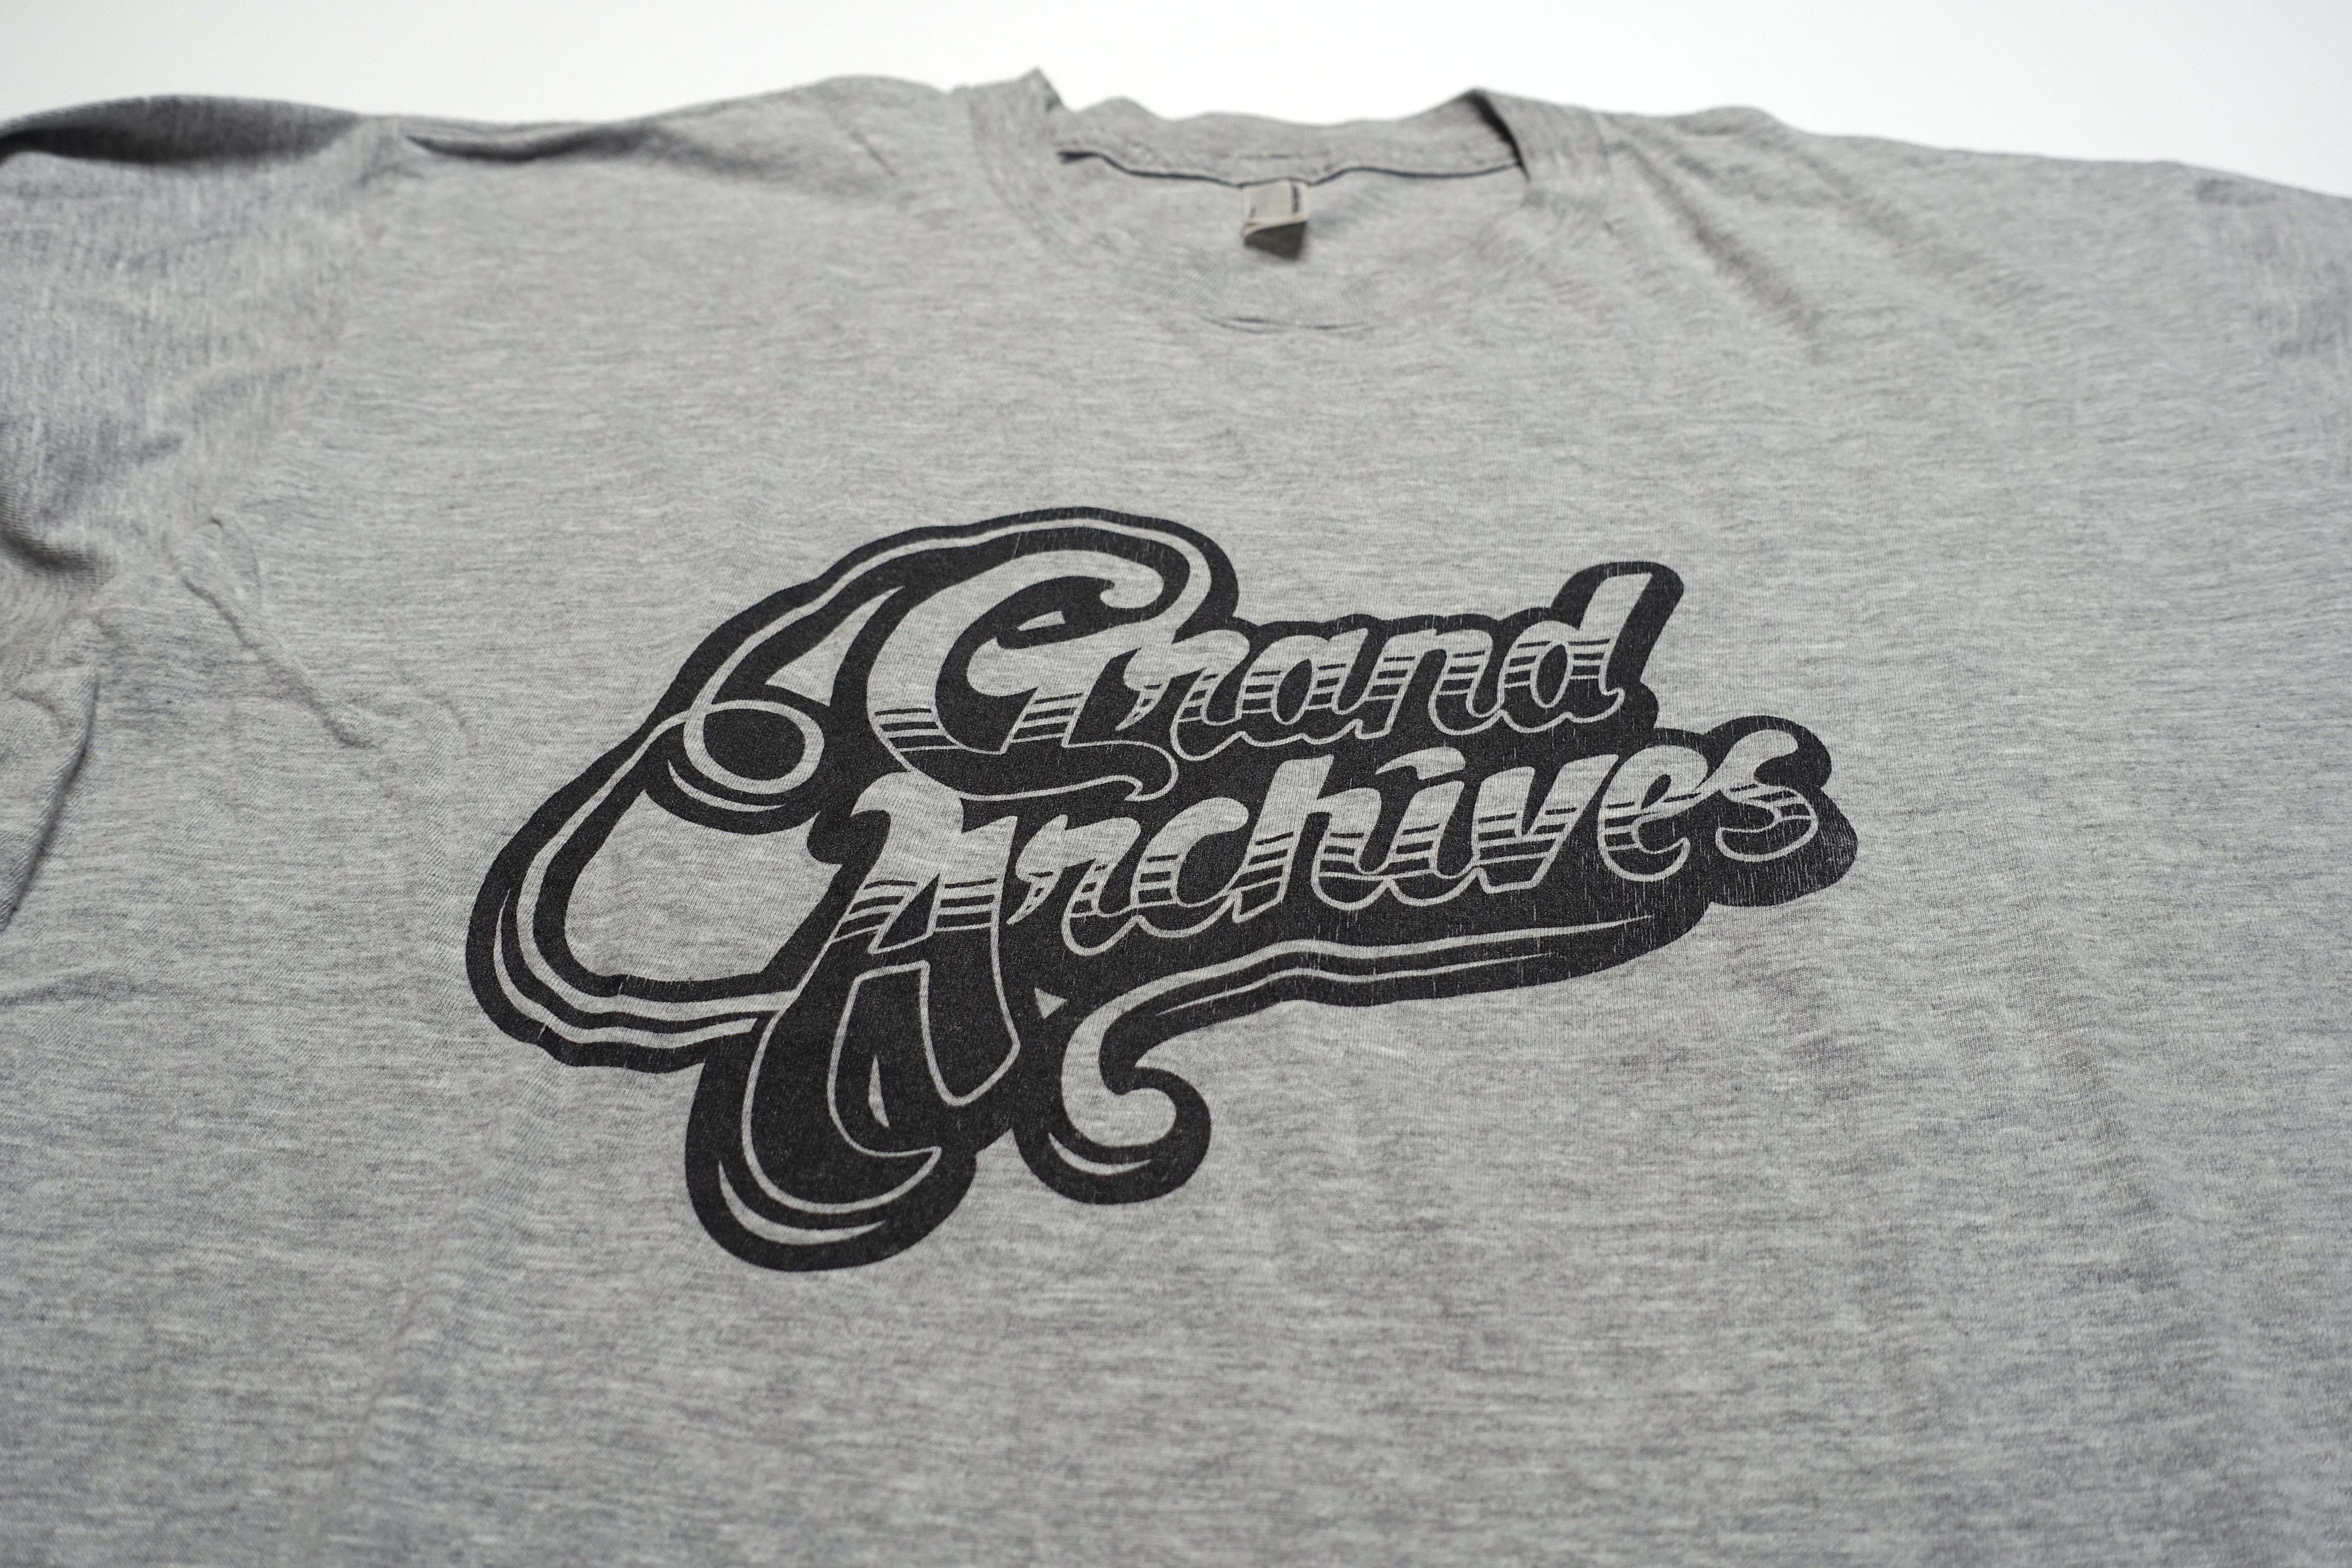 Grand Archives - Fancy Font 2008 Tour Shirt Size Large